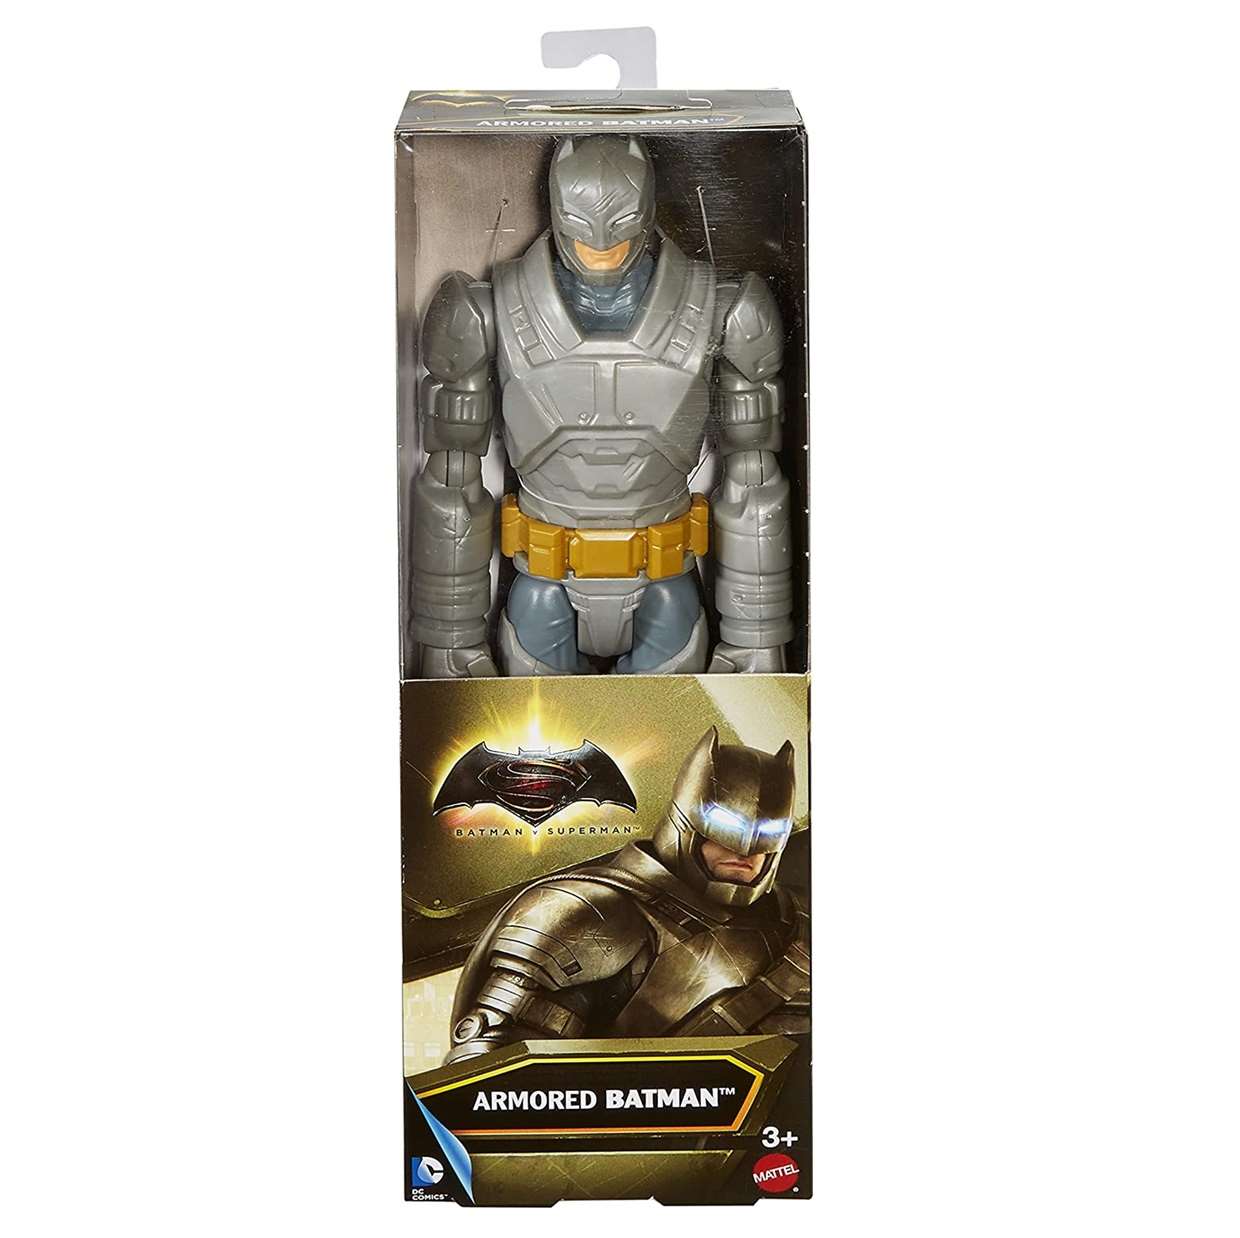 Batman Armored Figura Dc Batman Vs Superman Mattel 12 PuLG